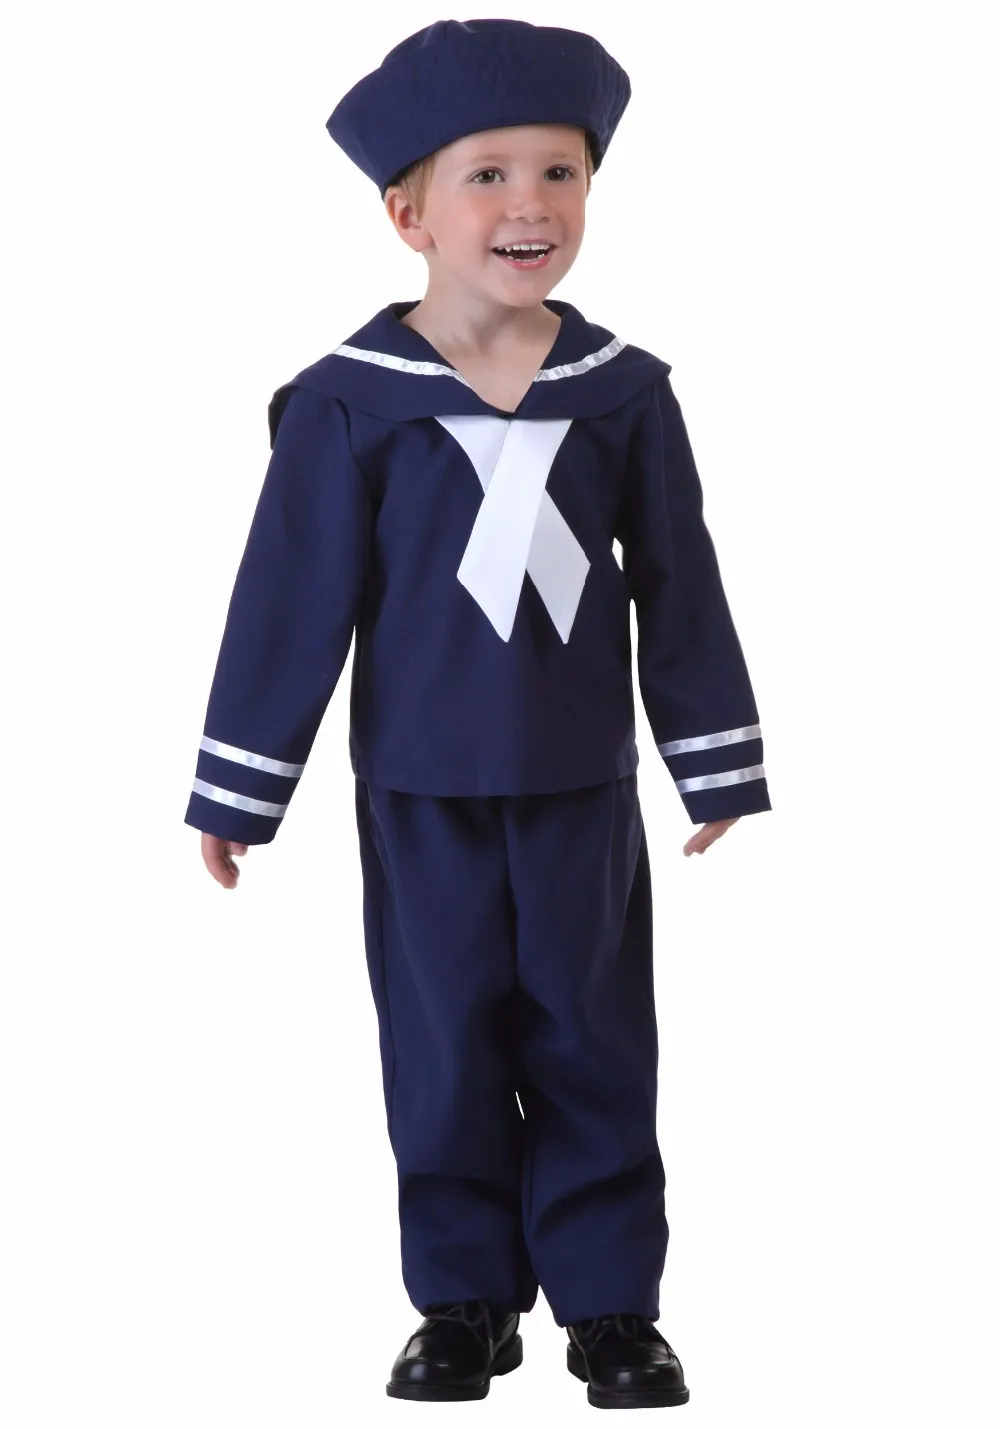 Ирек Горячие ВМС костюм одежда на Хэллоуин костюм для взрослых и детей Карнавальный костюм для карнавала партии Высокое качество yyt